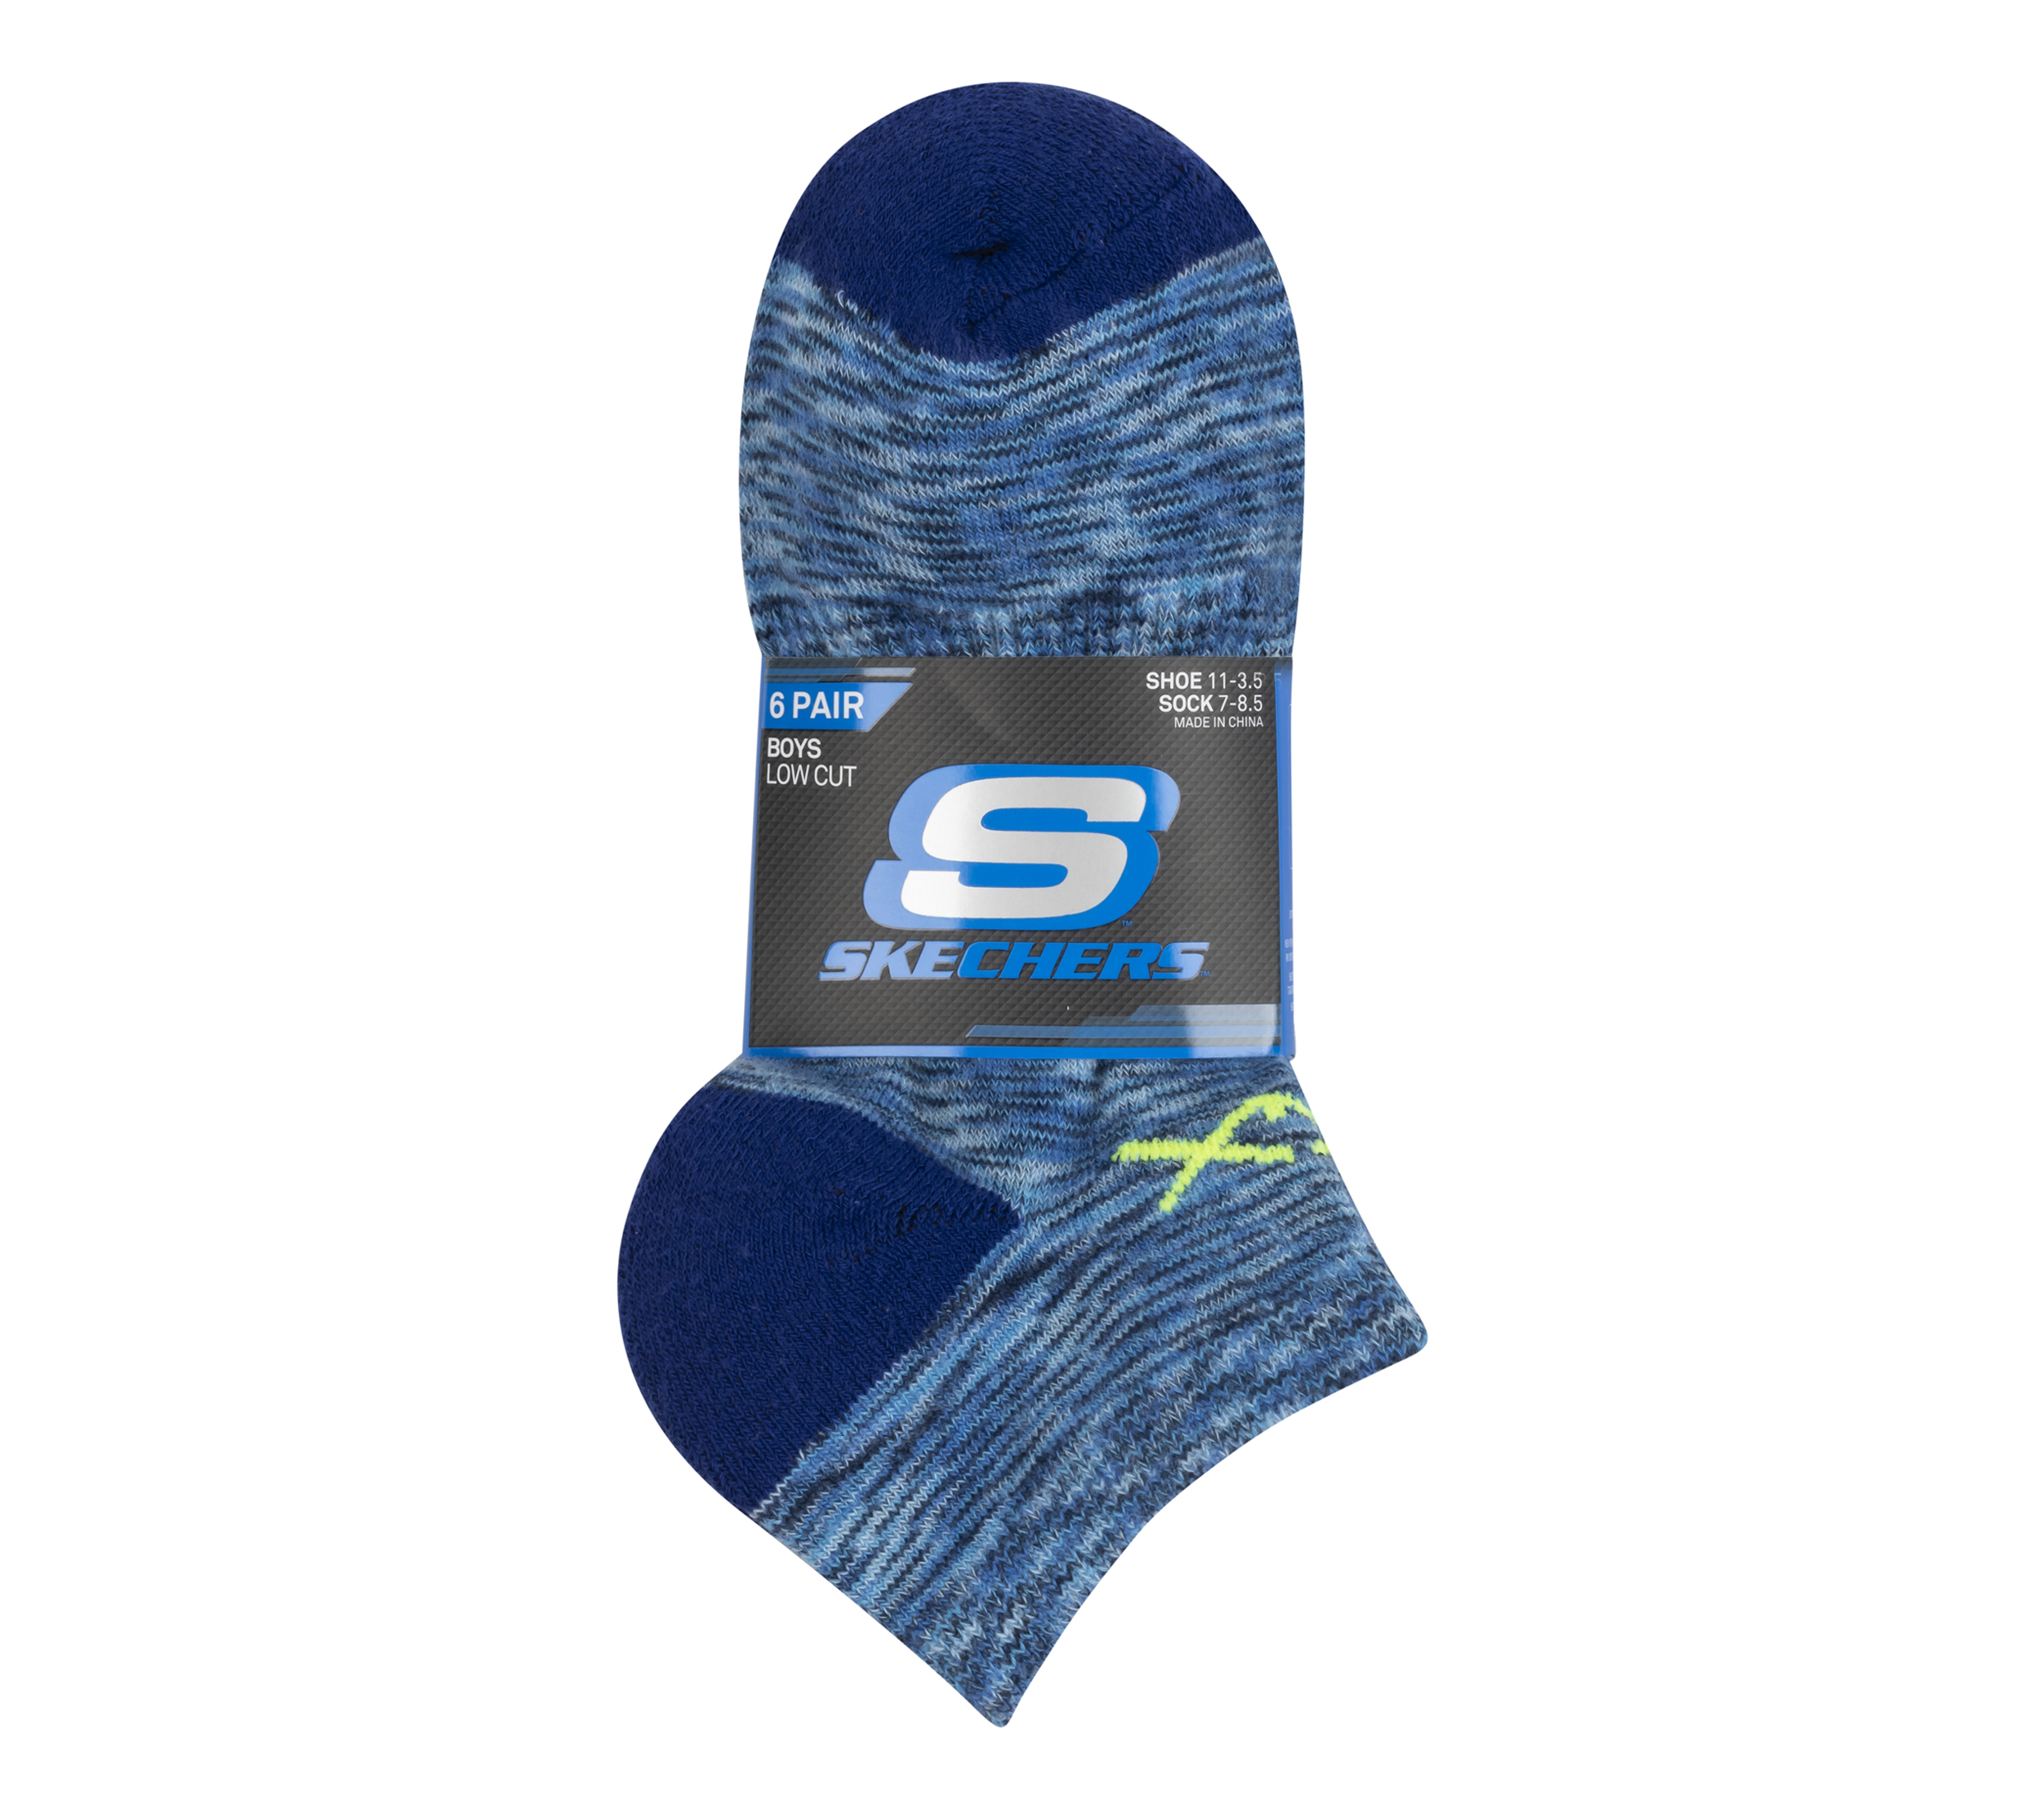 6 Pack | Socks SKECHERS Space Cut Low Dye